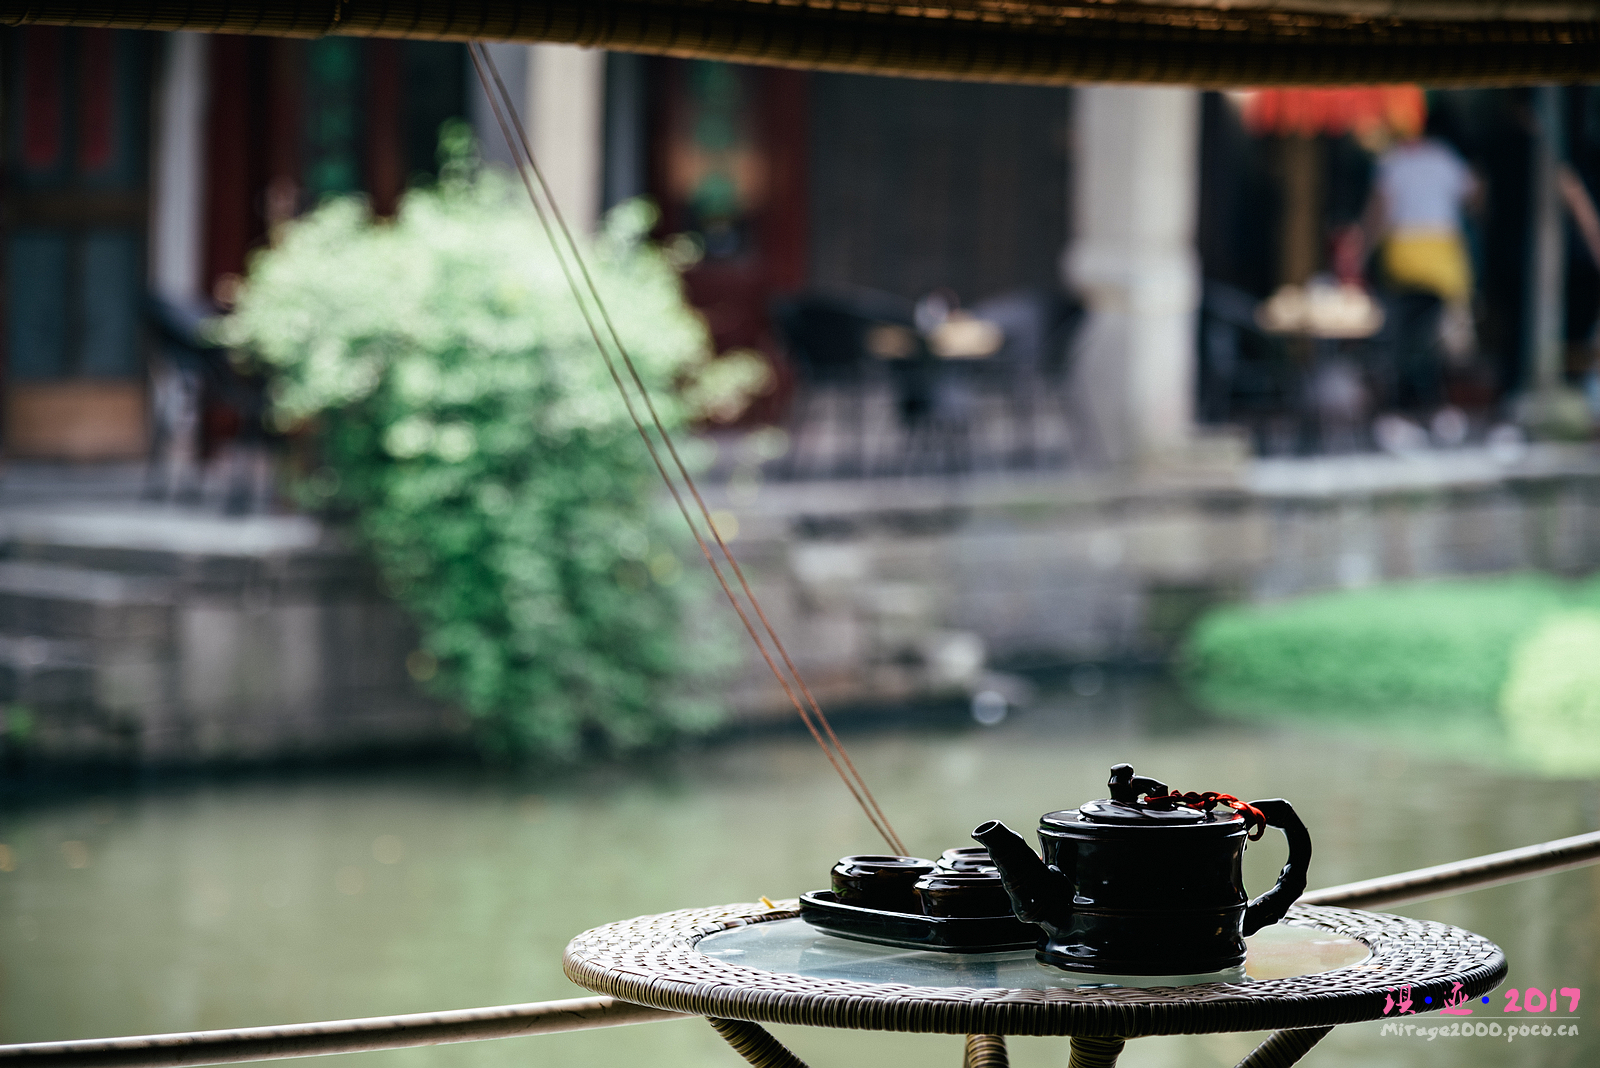 一杯茶、一壶酒、一条河、一艘船,这就是那个